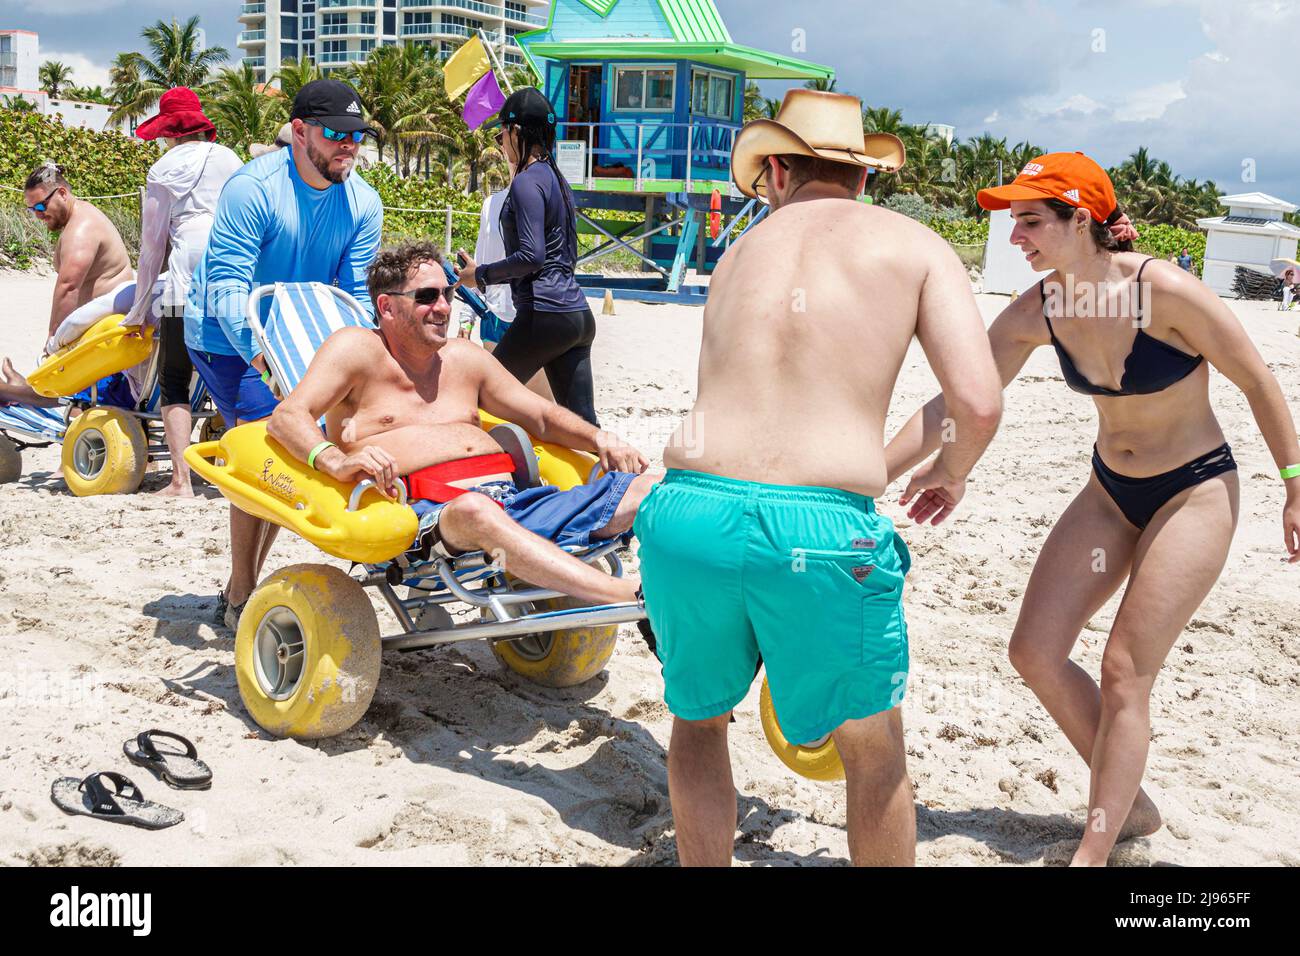 Miami Beach Florida, Sabrina Cohen Adaptive Beach Day, discapacitados necesidades especiales ruedas de agua para discapacitados, silla de ruedas flotante, hombre hispano mujer masculina Foto de stock